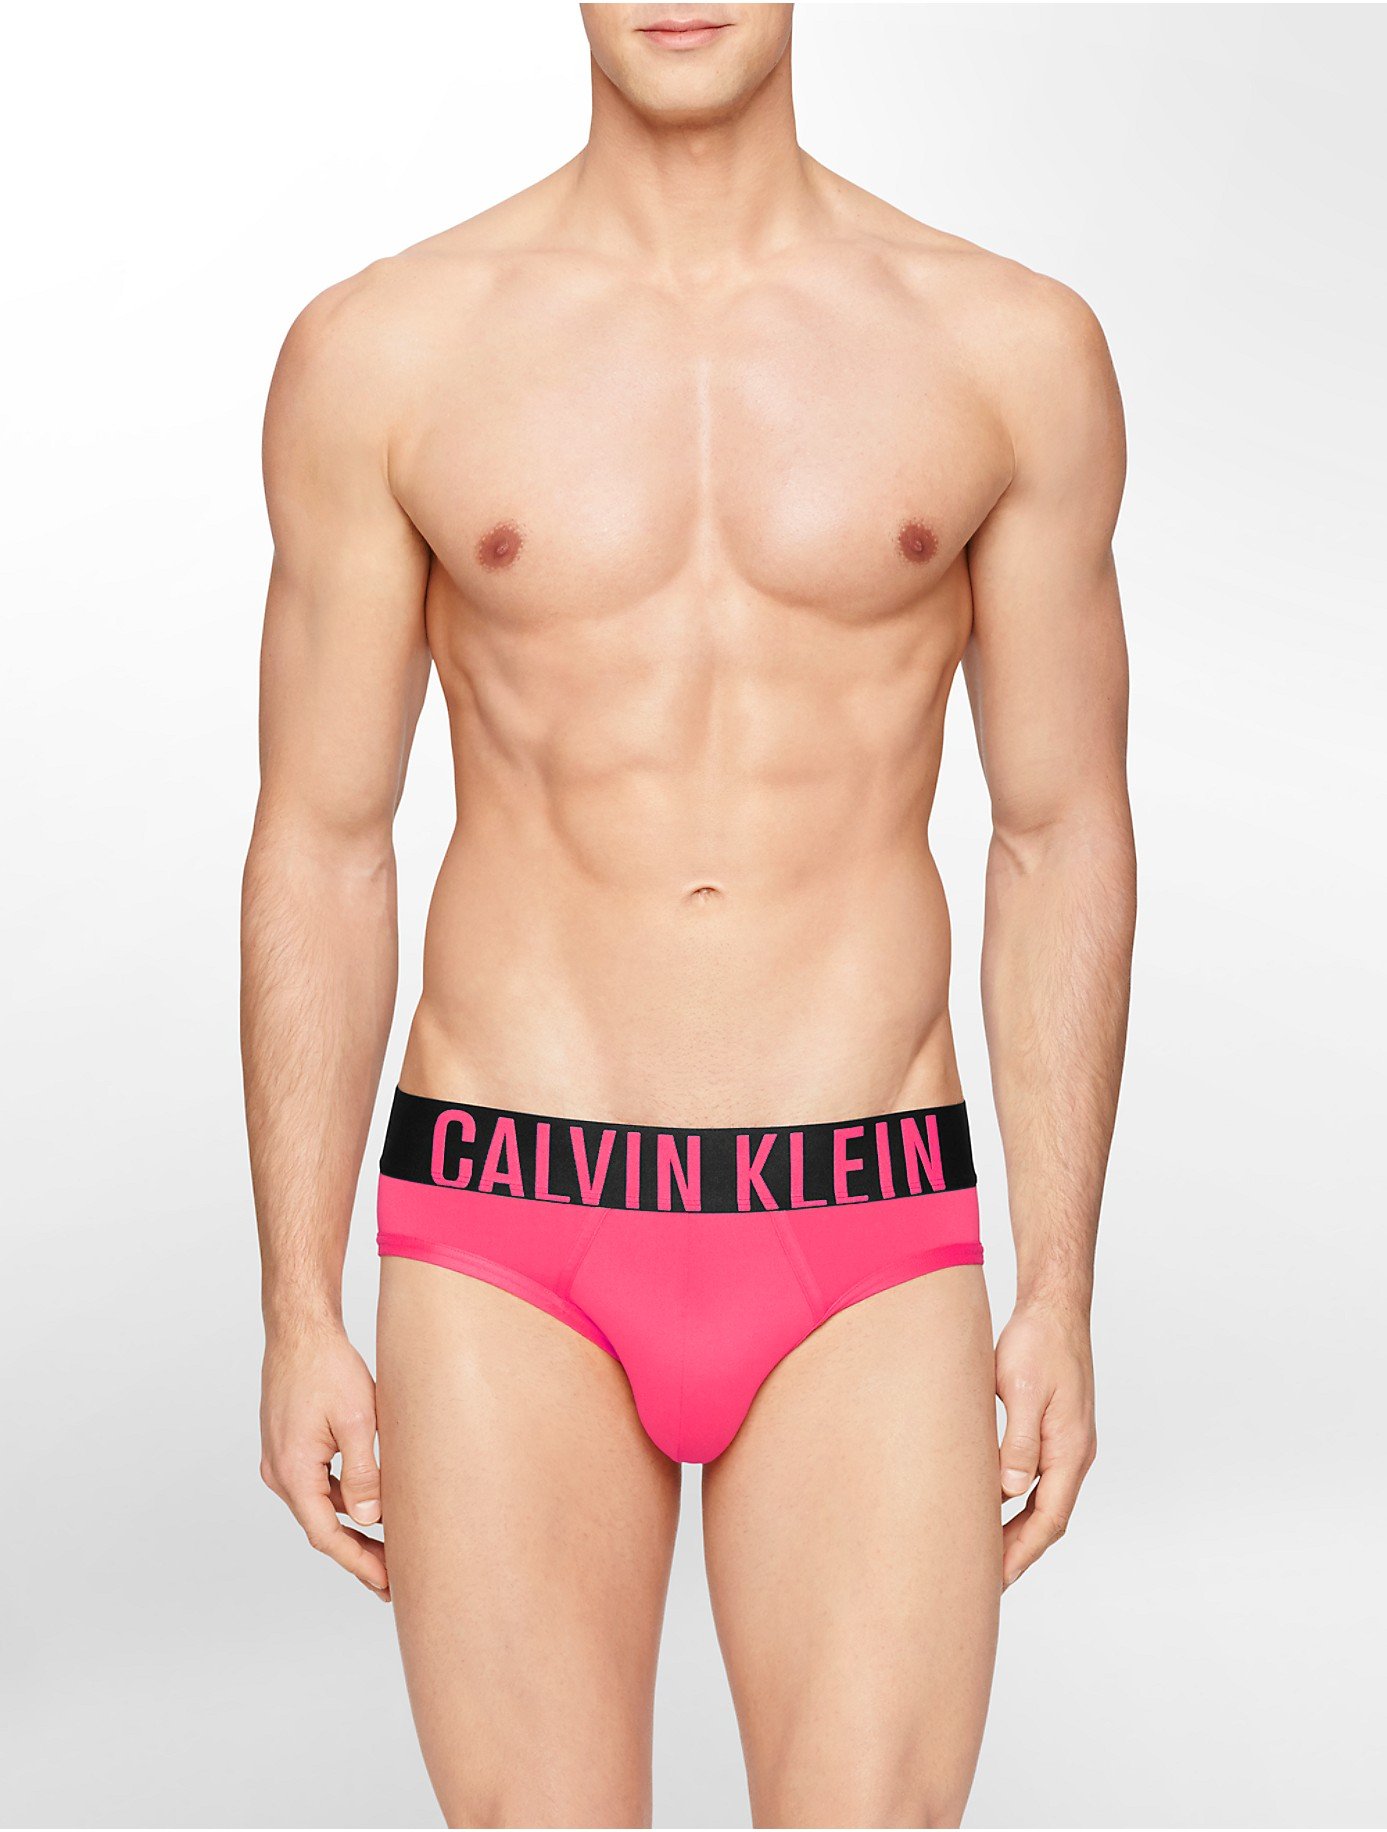 Calvin Klein Underwear Intense Power Micro Hip Brief in Pink for Men - Lyst